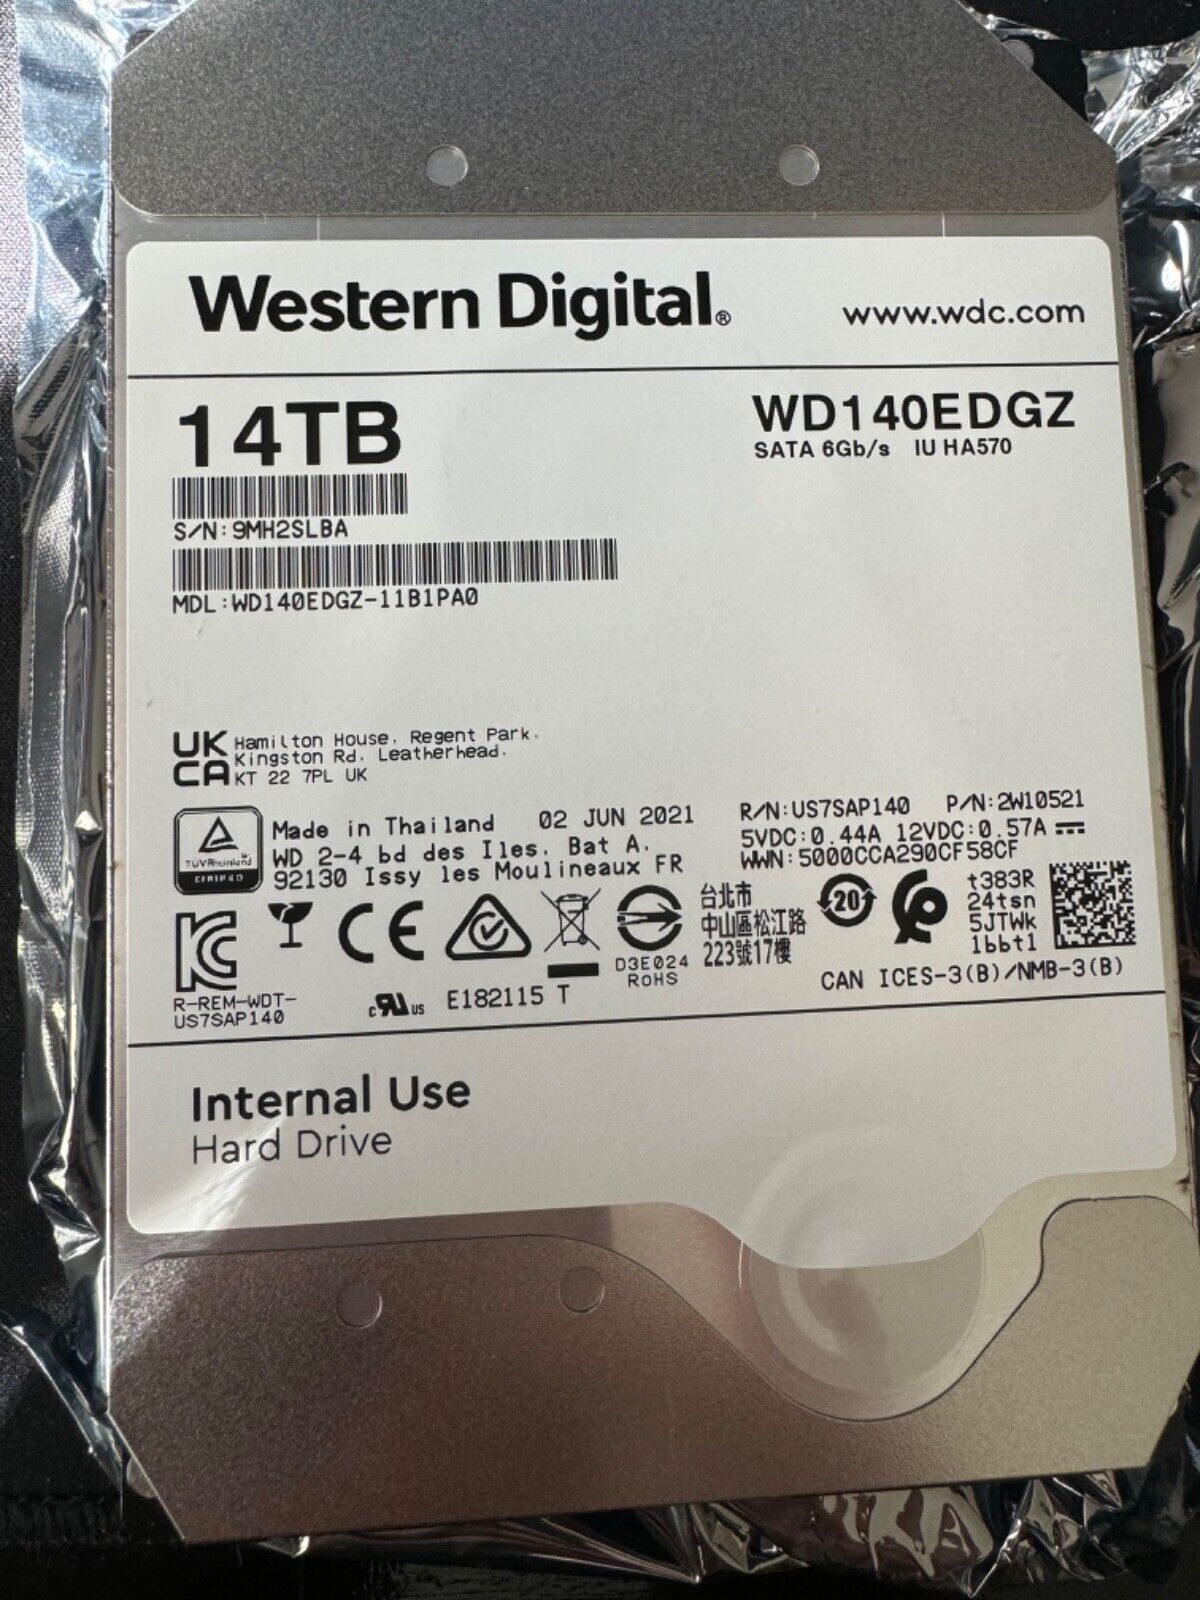 4x LOT Western Digital WD140EDGZ 14 TB, Internal, 5400 RPM, 3.5 inch Hard Drive